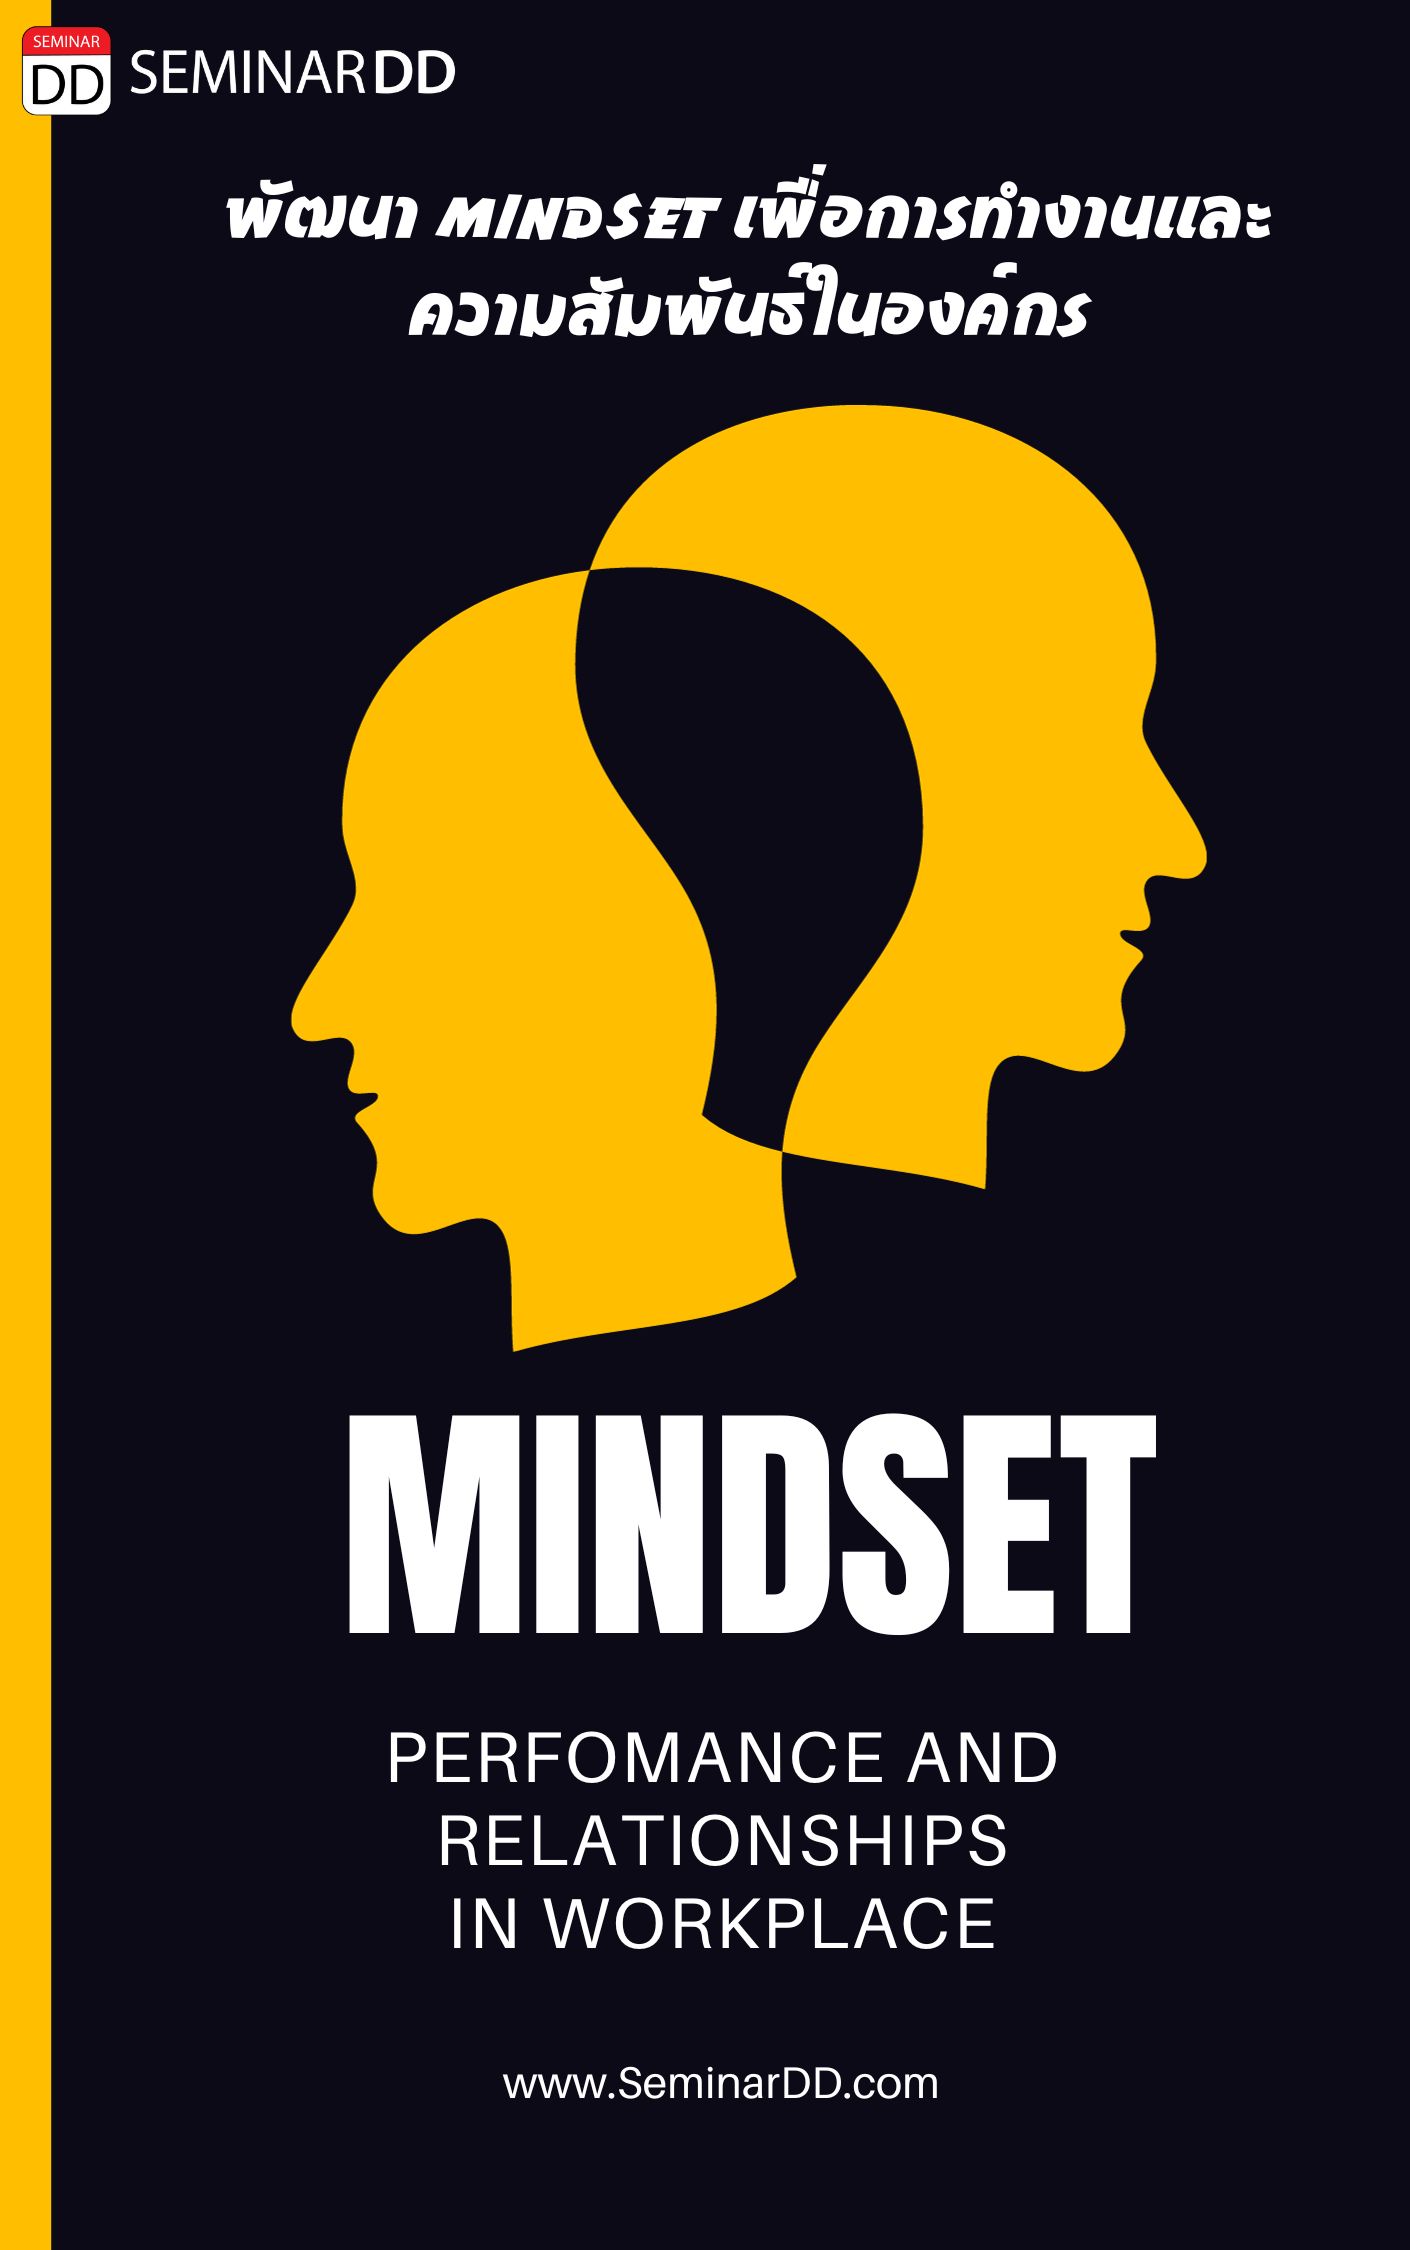 หลักสูตรอบรม หลักสูตรอบรม การพัฒนา Mindset เพื่อการทำงานและการความสัมพันธ์ในองค์กร (Mindset for Performance and Relationships in workplace)